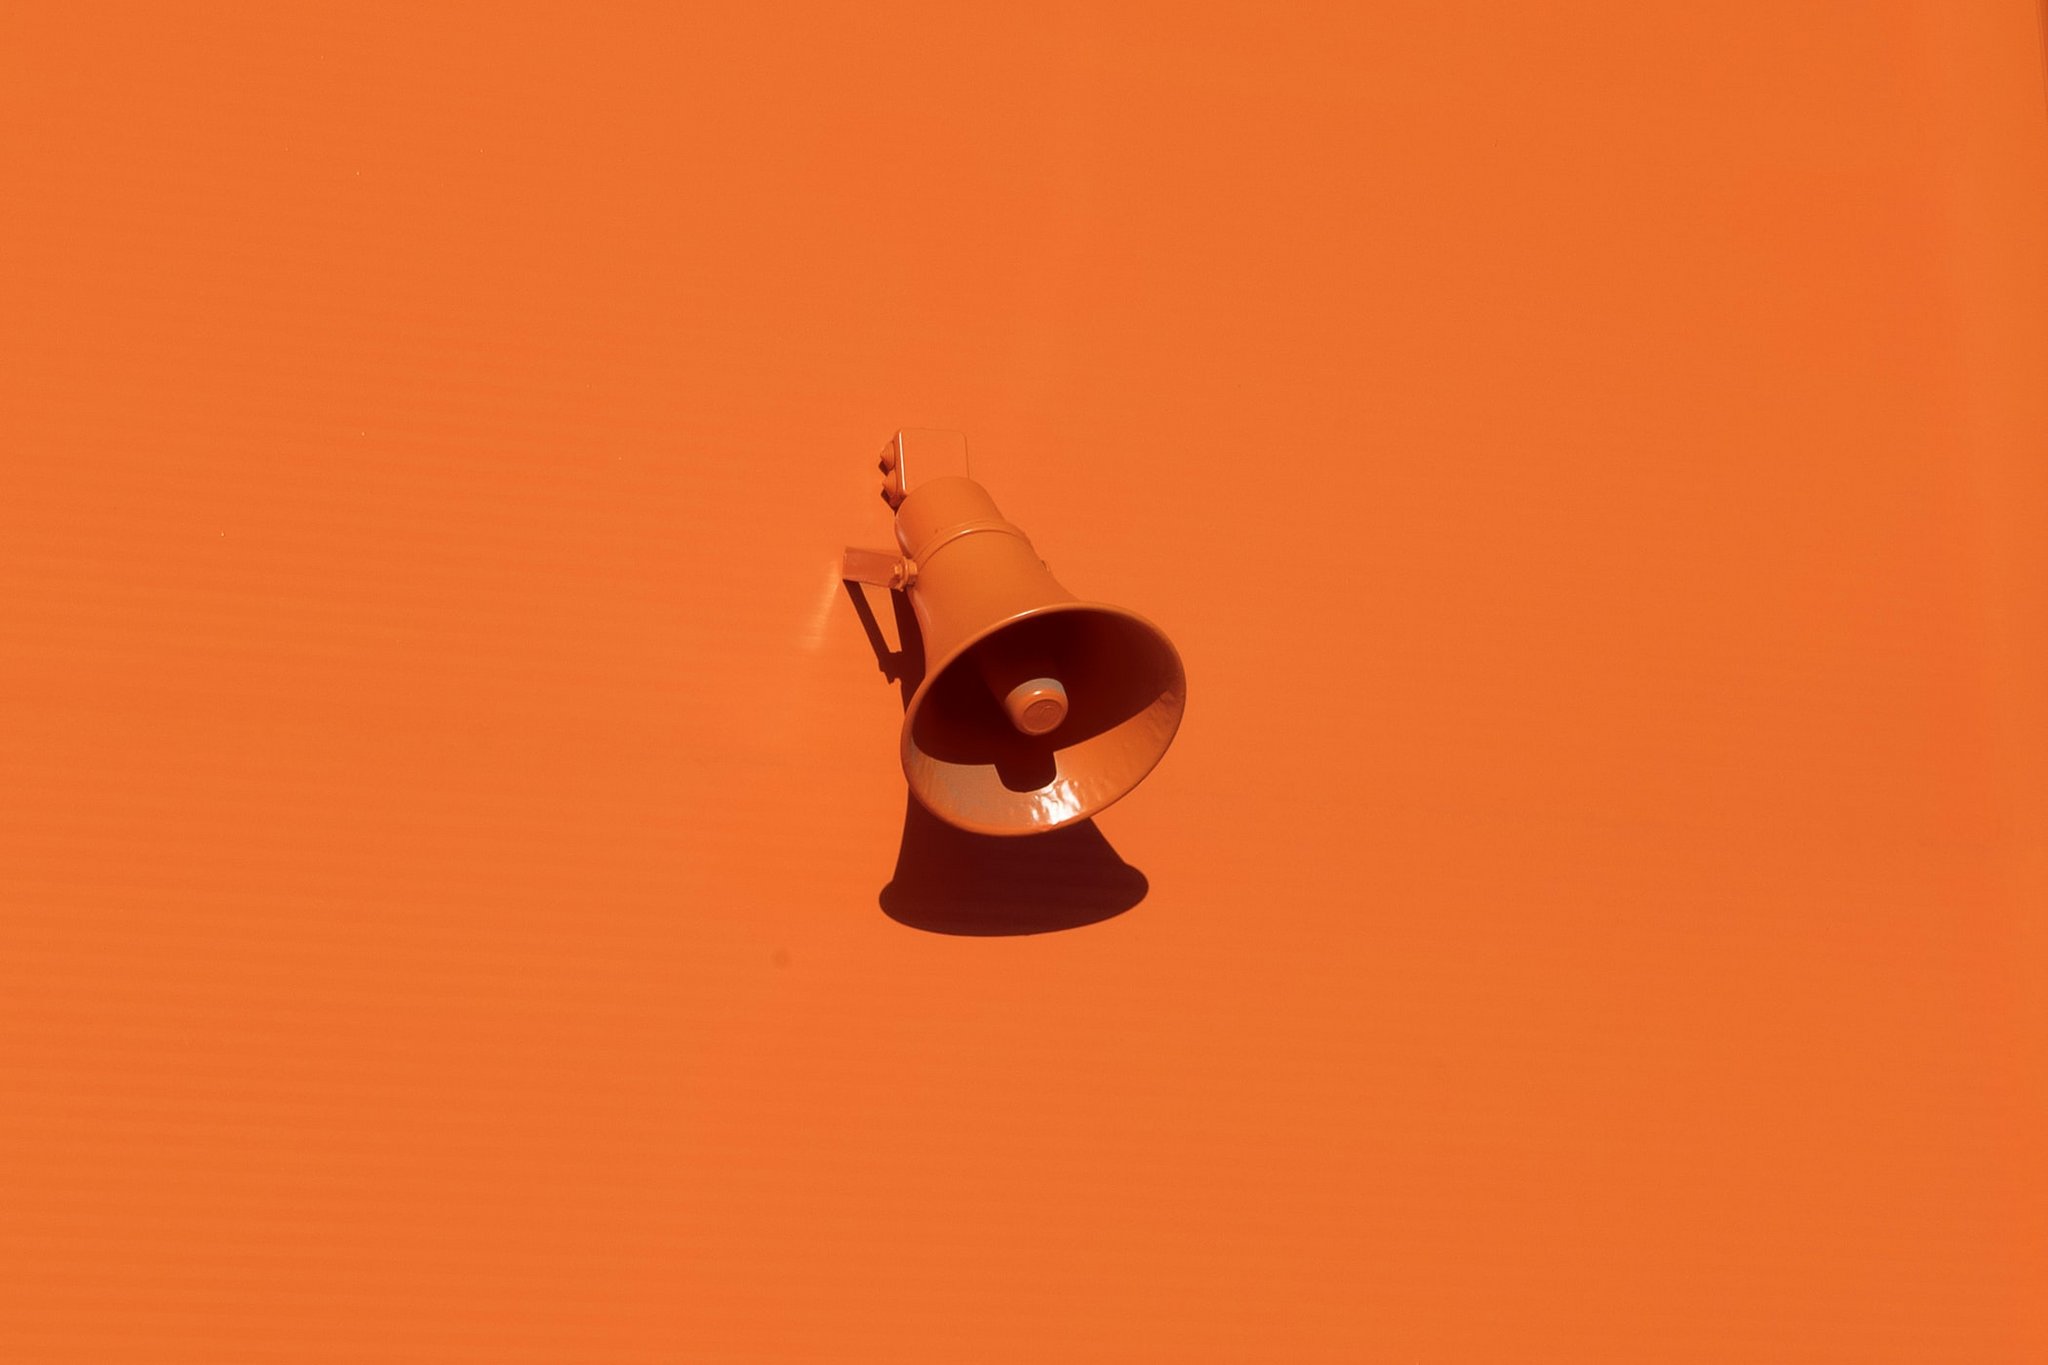 Das Bild zeigt eine orangene Wand mit einem Lautsprecher in der gleichen Farbe